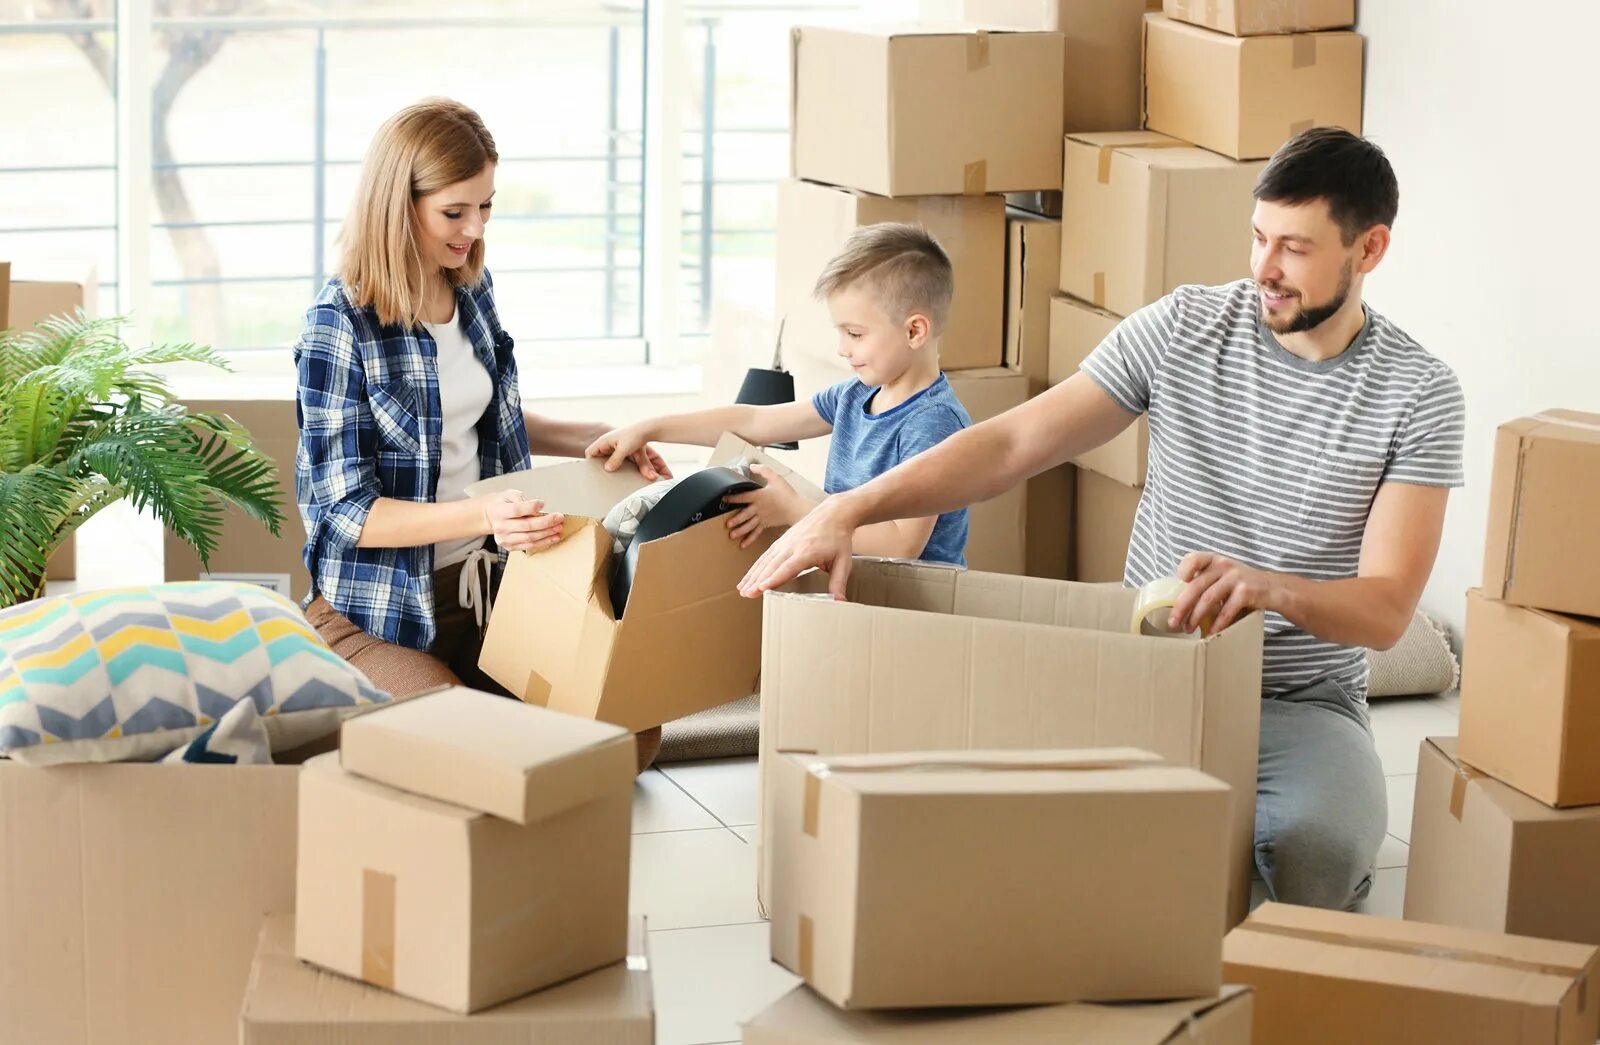 Переехать жить к сыну. Переезд. Семья в квартире с коробками. Переезжают в квартиру. Коробки с вещами.